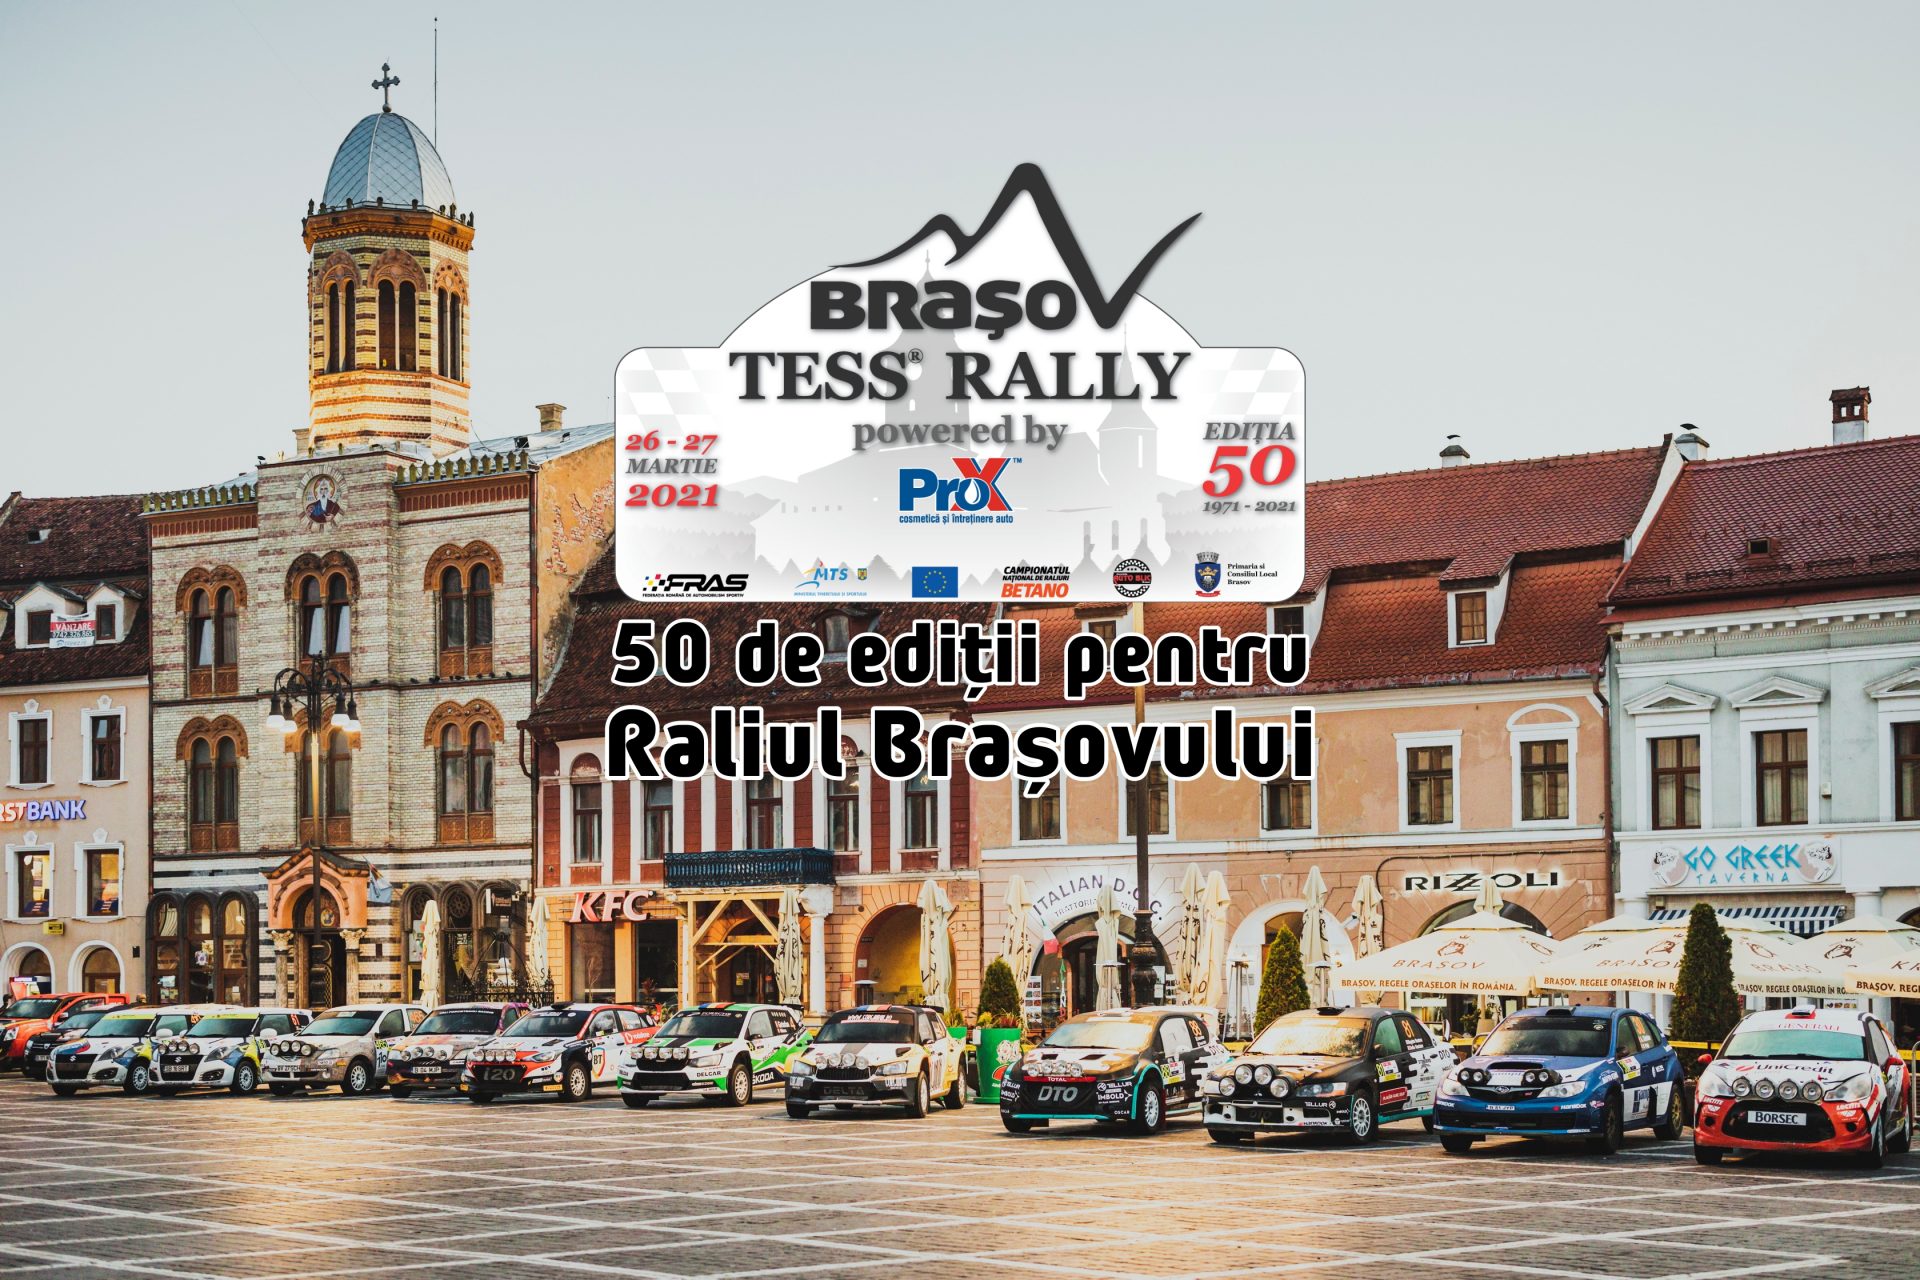 Raliul Brașovului sărbătorește 50 de ani cu o ediție specială